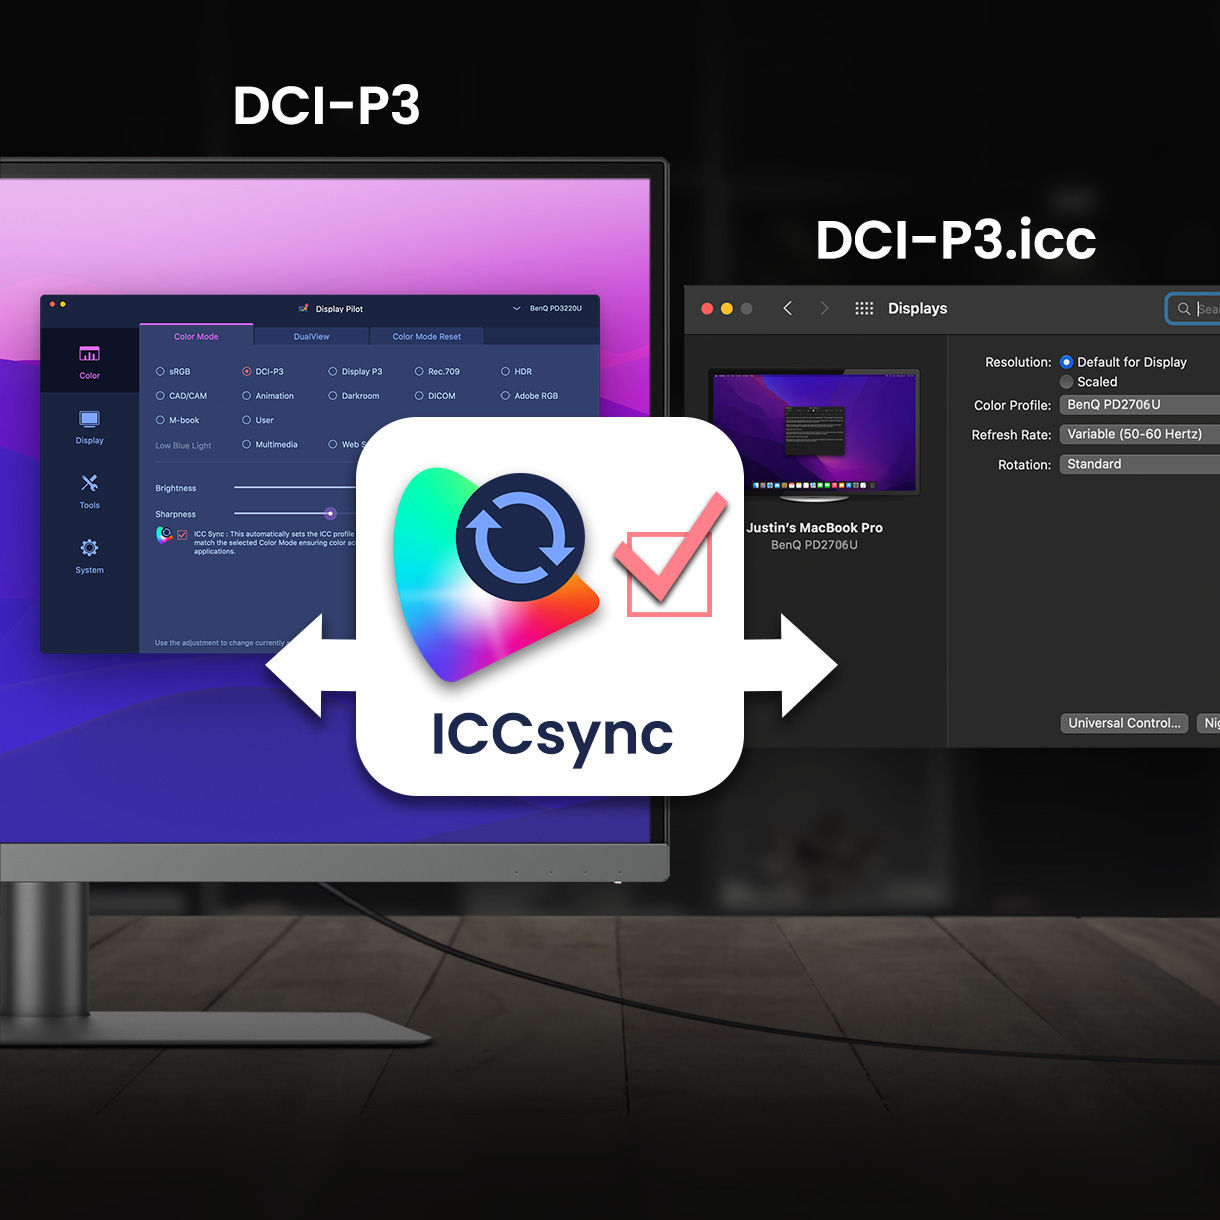 Keičiant spalvų režimus, „BenQ ICCsync“ automatiškai suderina ir sinchronizuoja ICC profilius ne tik pačiame monitoriuje, bet ir tarp nešiojamojo kompiuterio bei „BenQ“ monitoriaus. Ir visa tai vyksta akimirksniu.